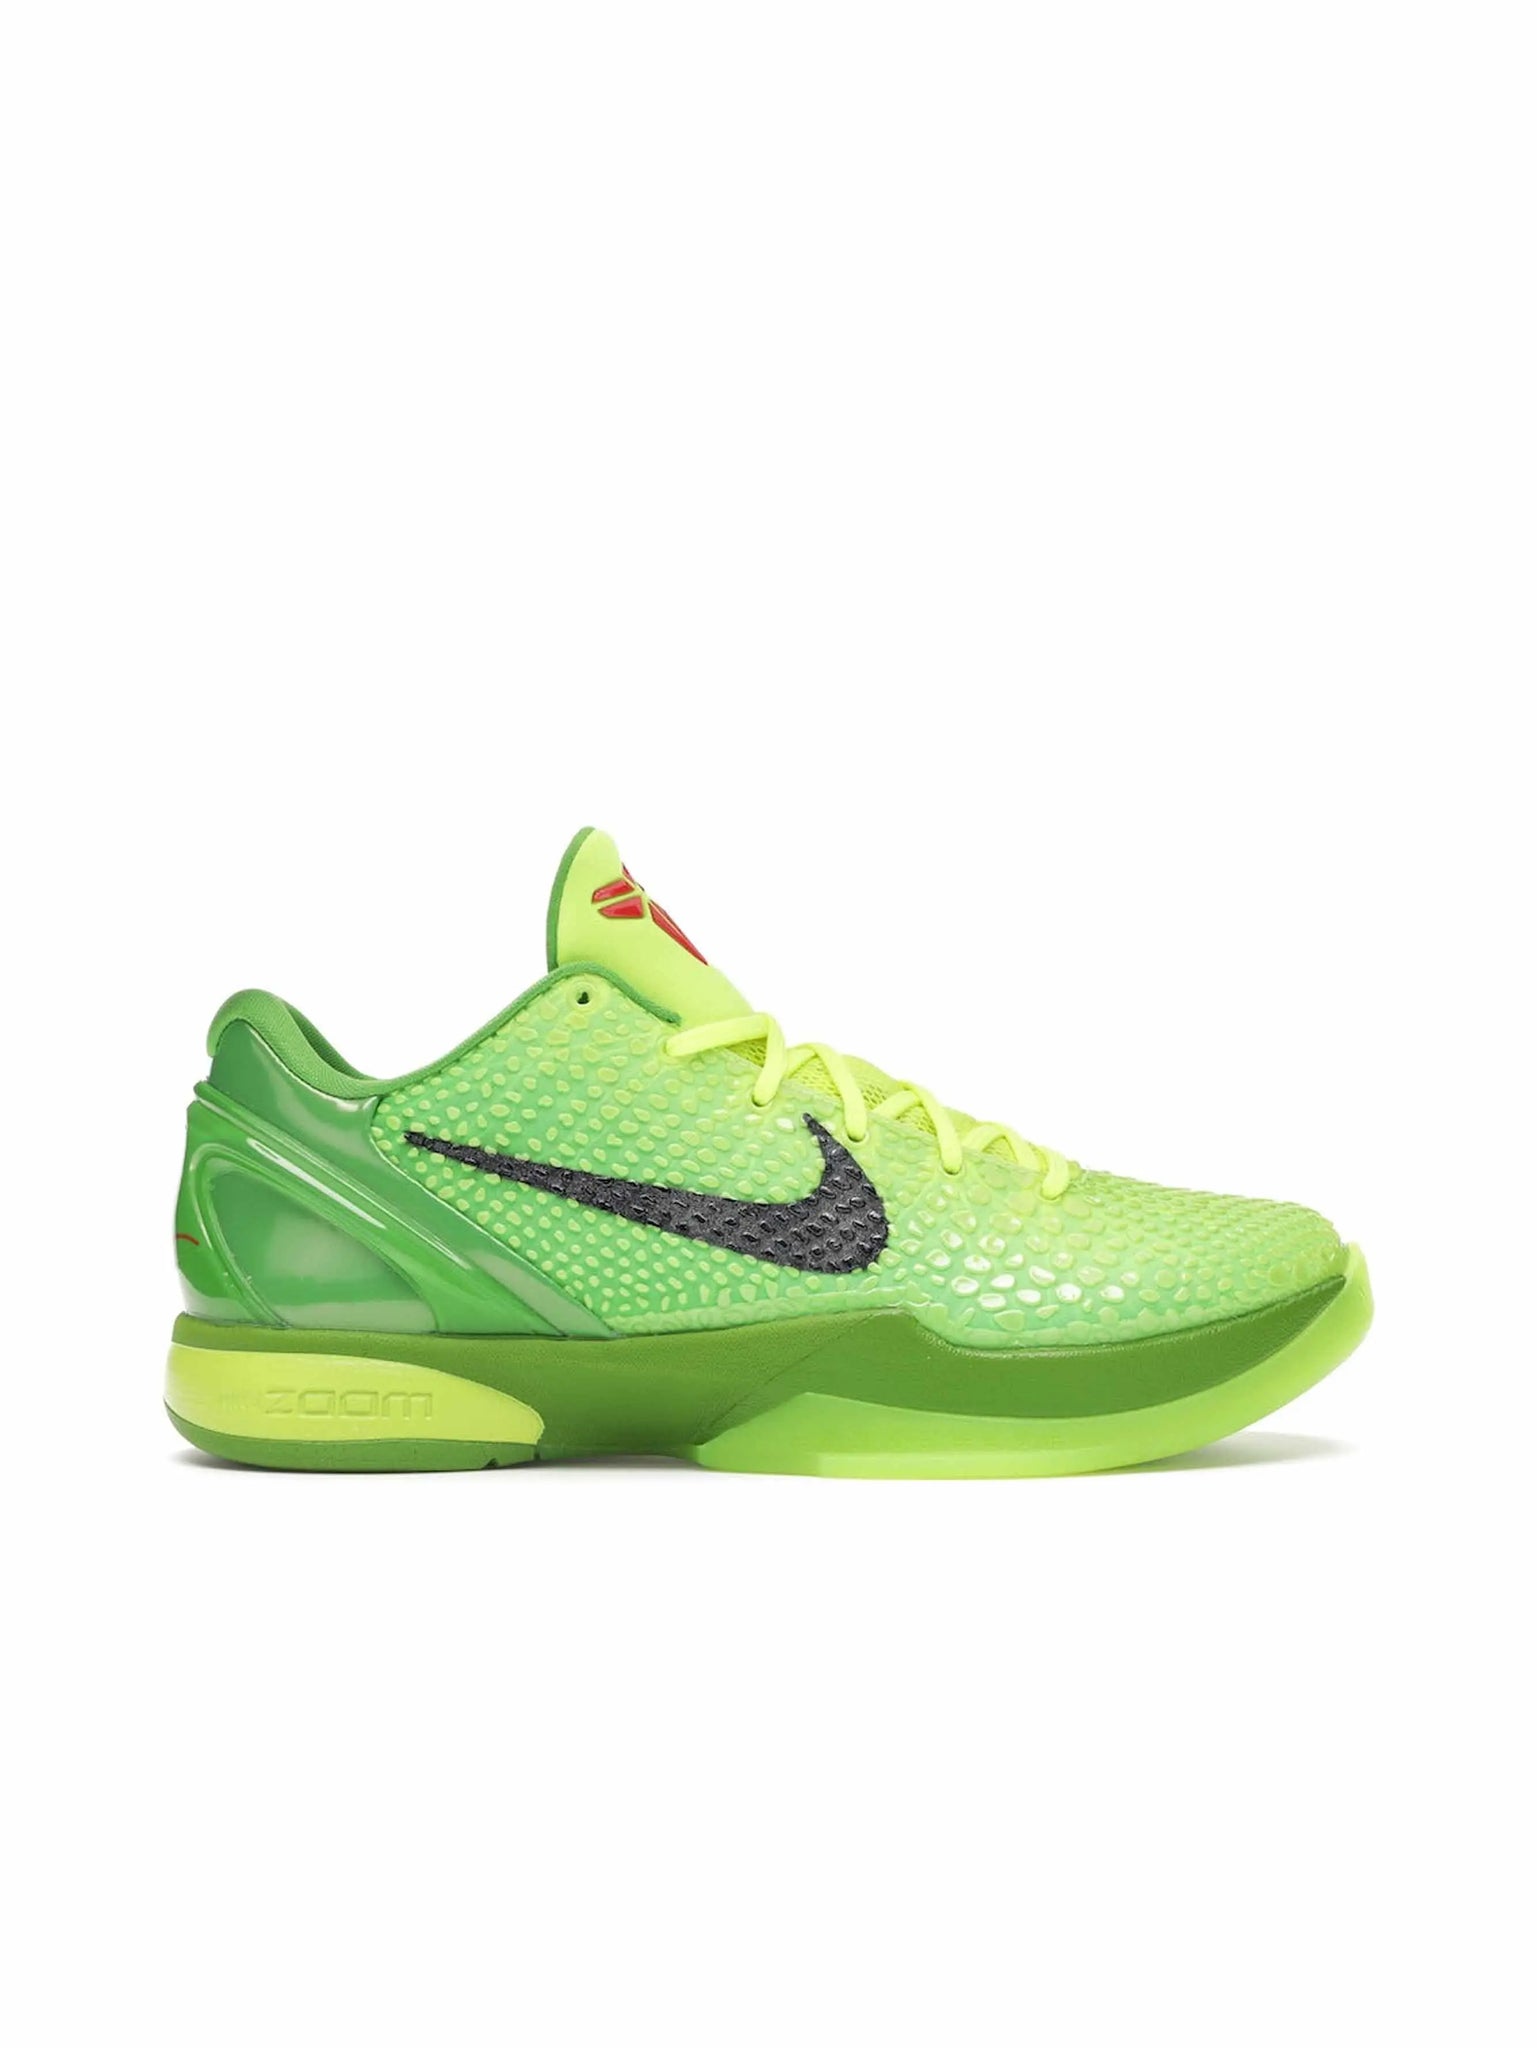 Nike Kobe 6 Protro Grinch (2020) in Melbourne, Australia - Prior